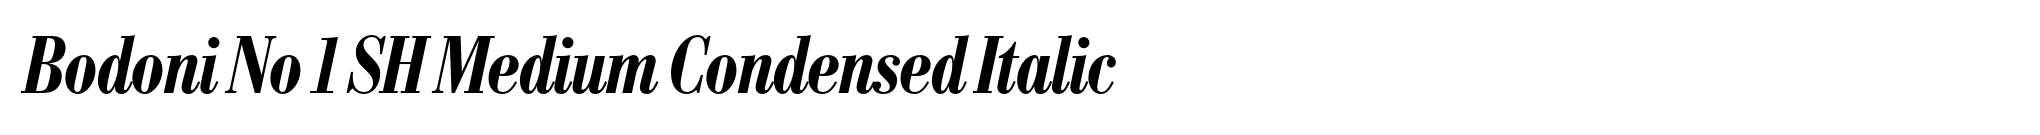 Bodoni No 1 SH Medium Condensed Italic image